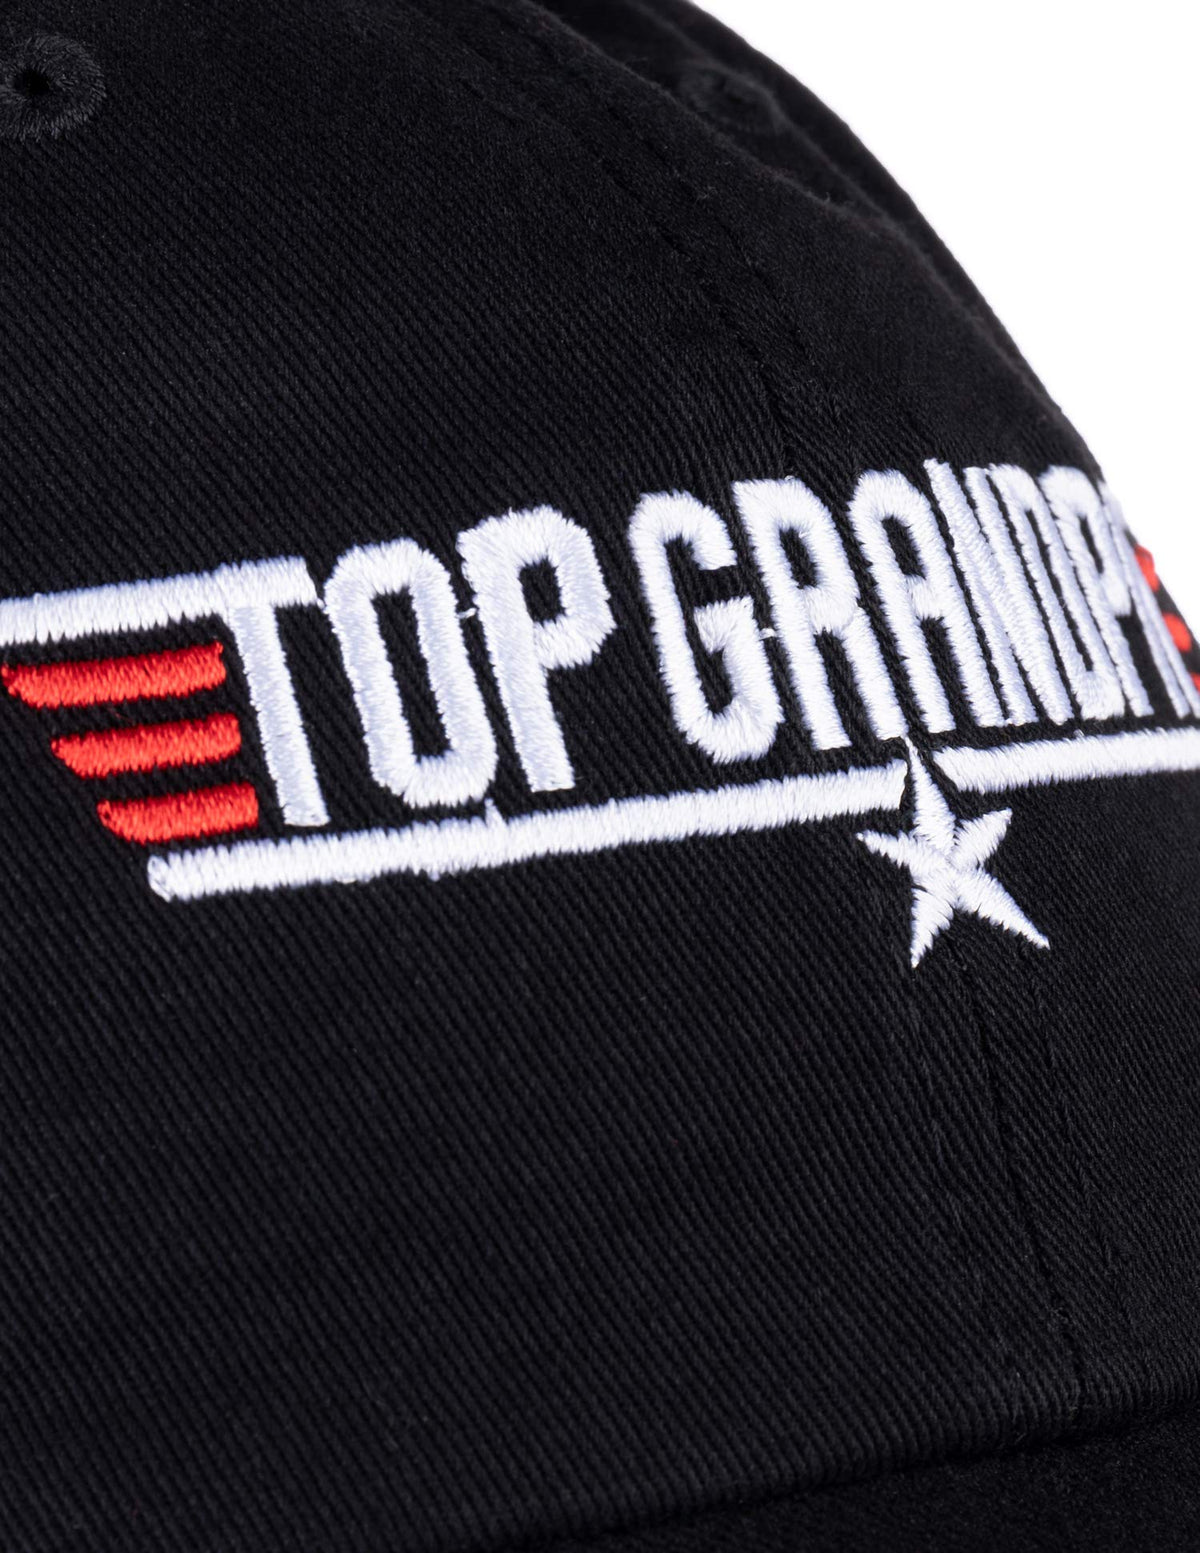 Top Grandpa | Funny 80s Grandpa Air Force Military Baseball Cap Hat Black - Men's/Unisex